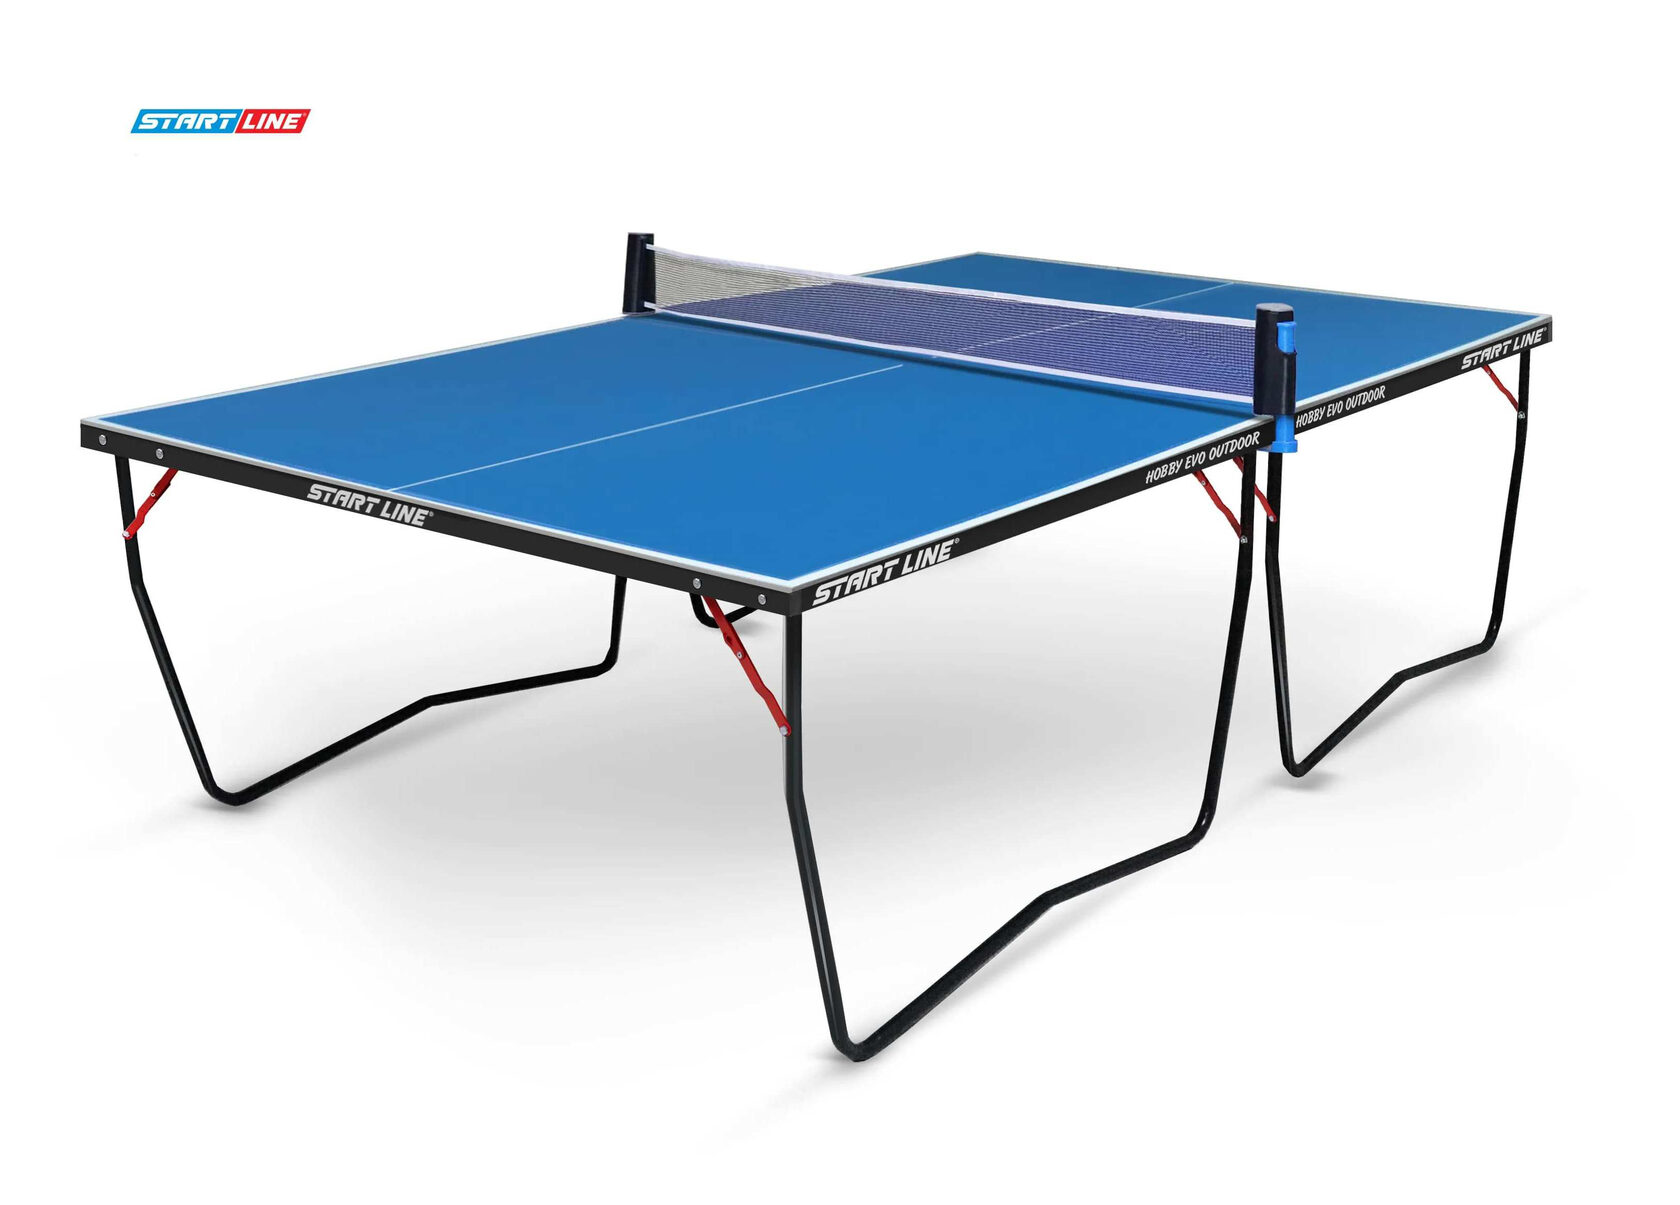 Новые модели столов для настольного тенниса Start line линейки EVO